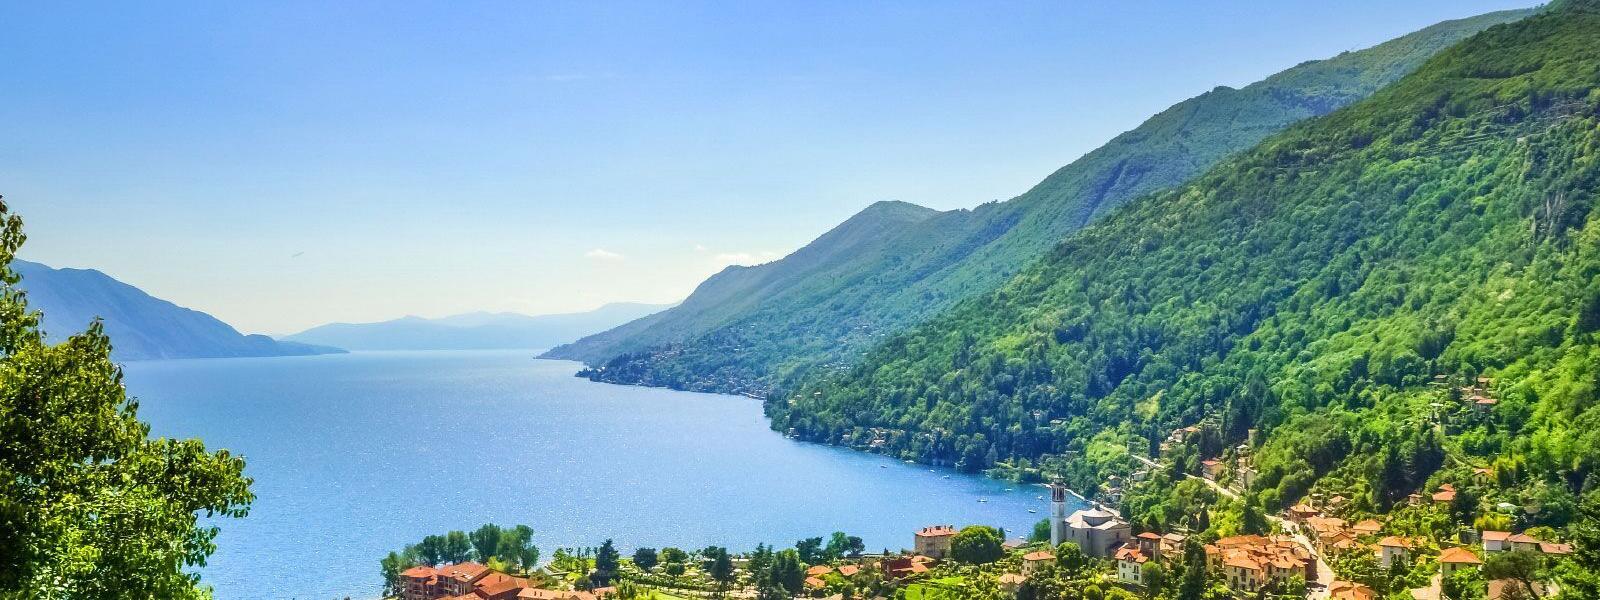 Ferienwohnungen und Ferienhäuser am Lago Maggiore - atraveo